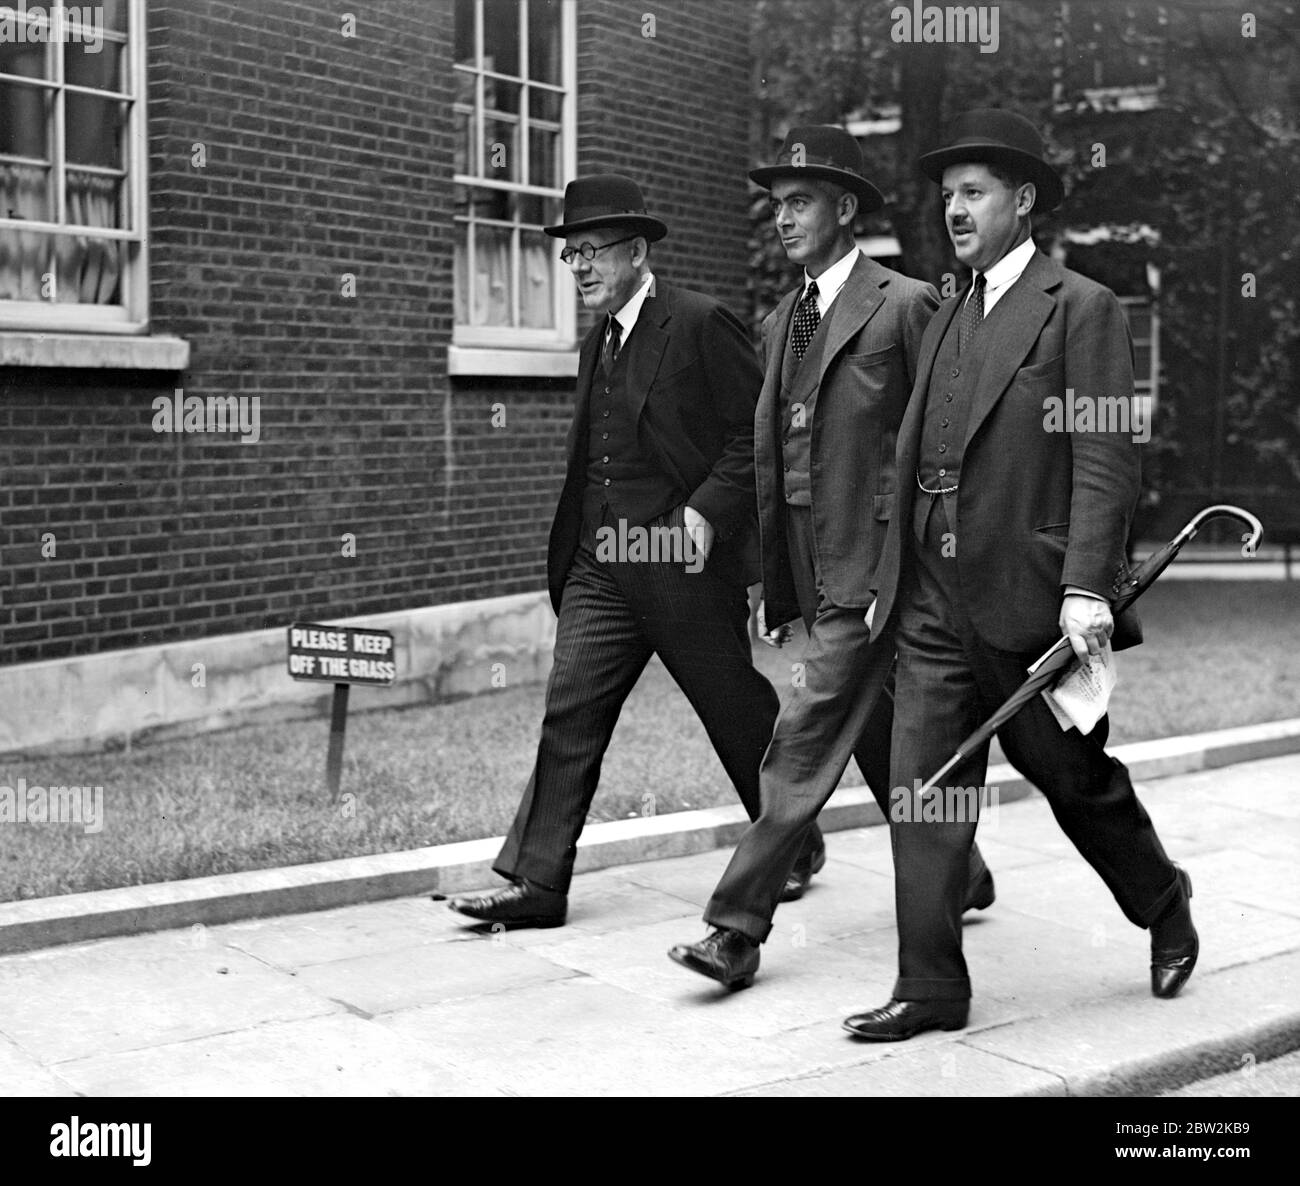 La crisi europea. 1939. Walter Elliot, S.S. Morrison e il capitano Euan Wallace. 22 agosto 1939 Foto Stock